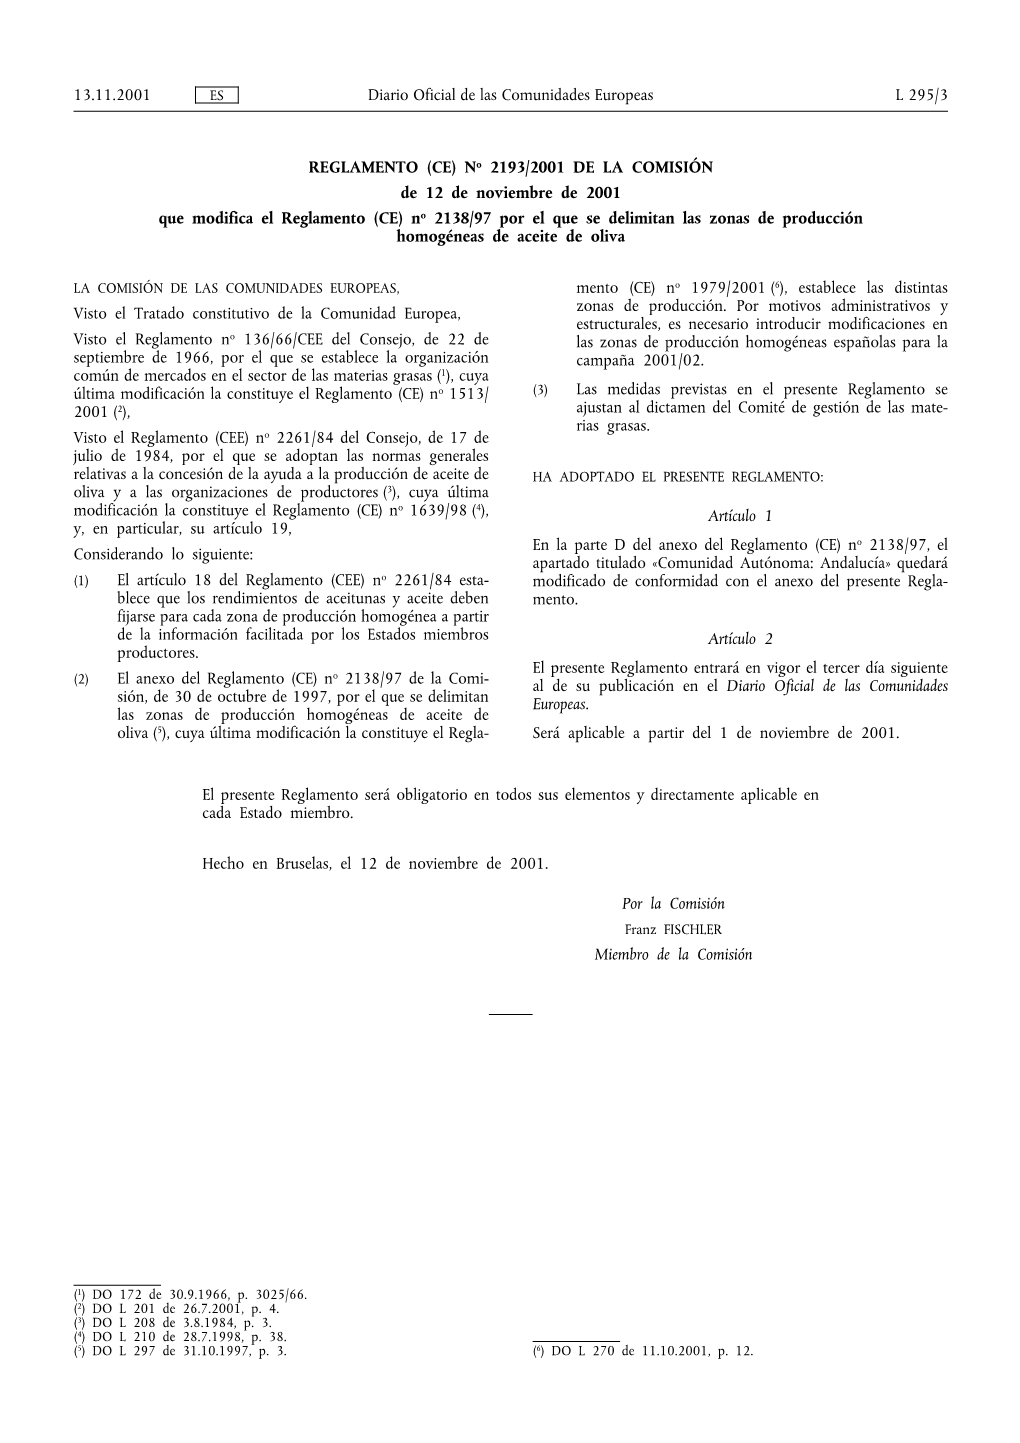 Diario Oficial L 295, 13/11/2001, P. 3